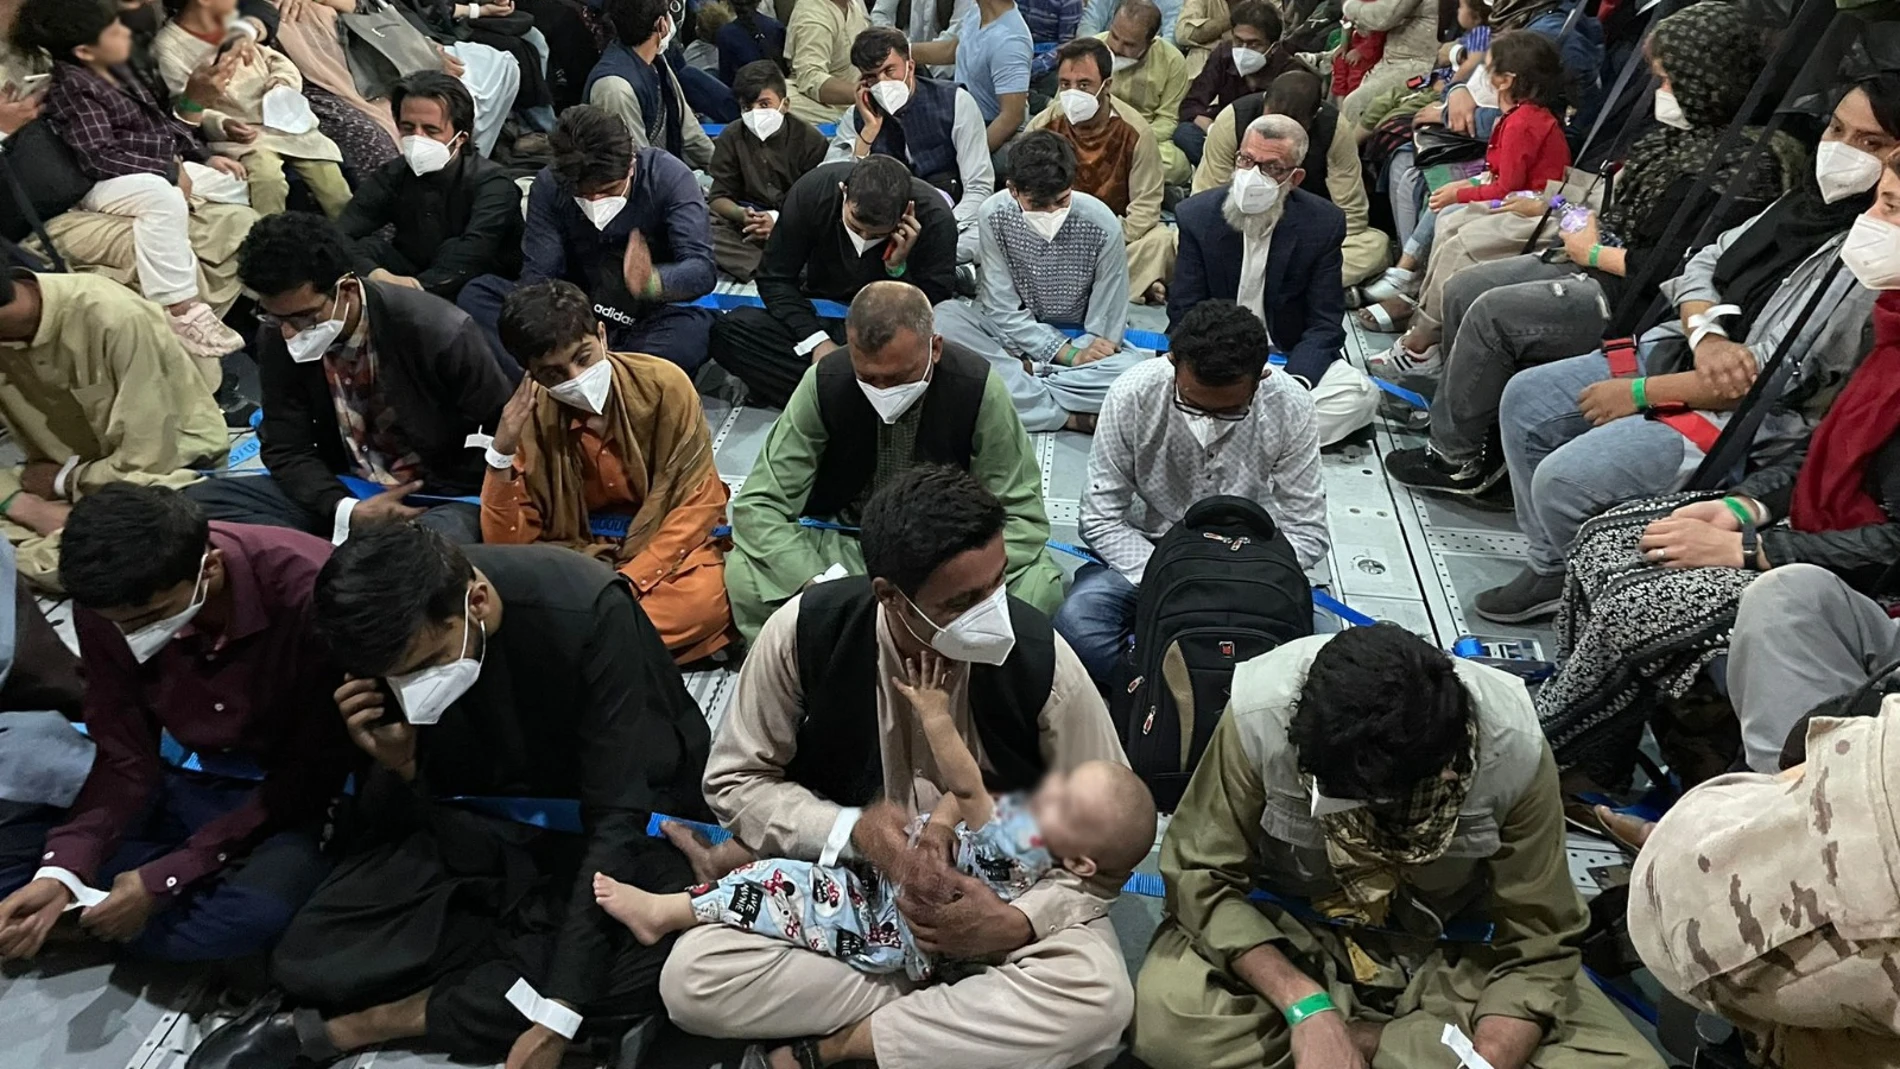 Los vuelos van atestados tratando de sacar a la mayor cantidad de afganos posibles.